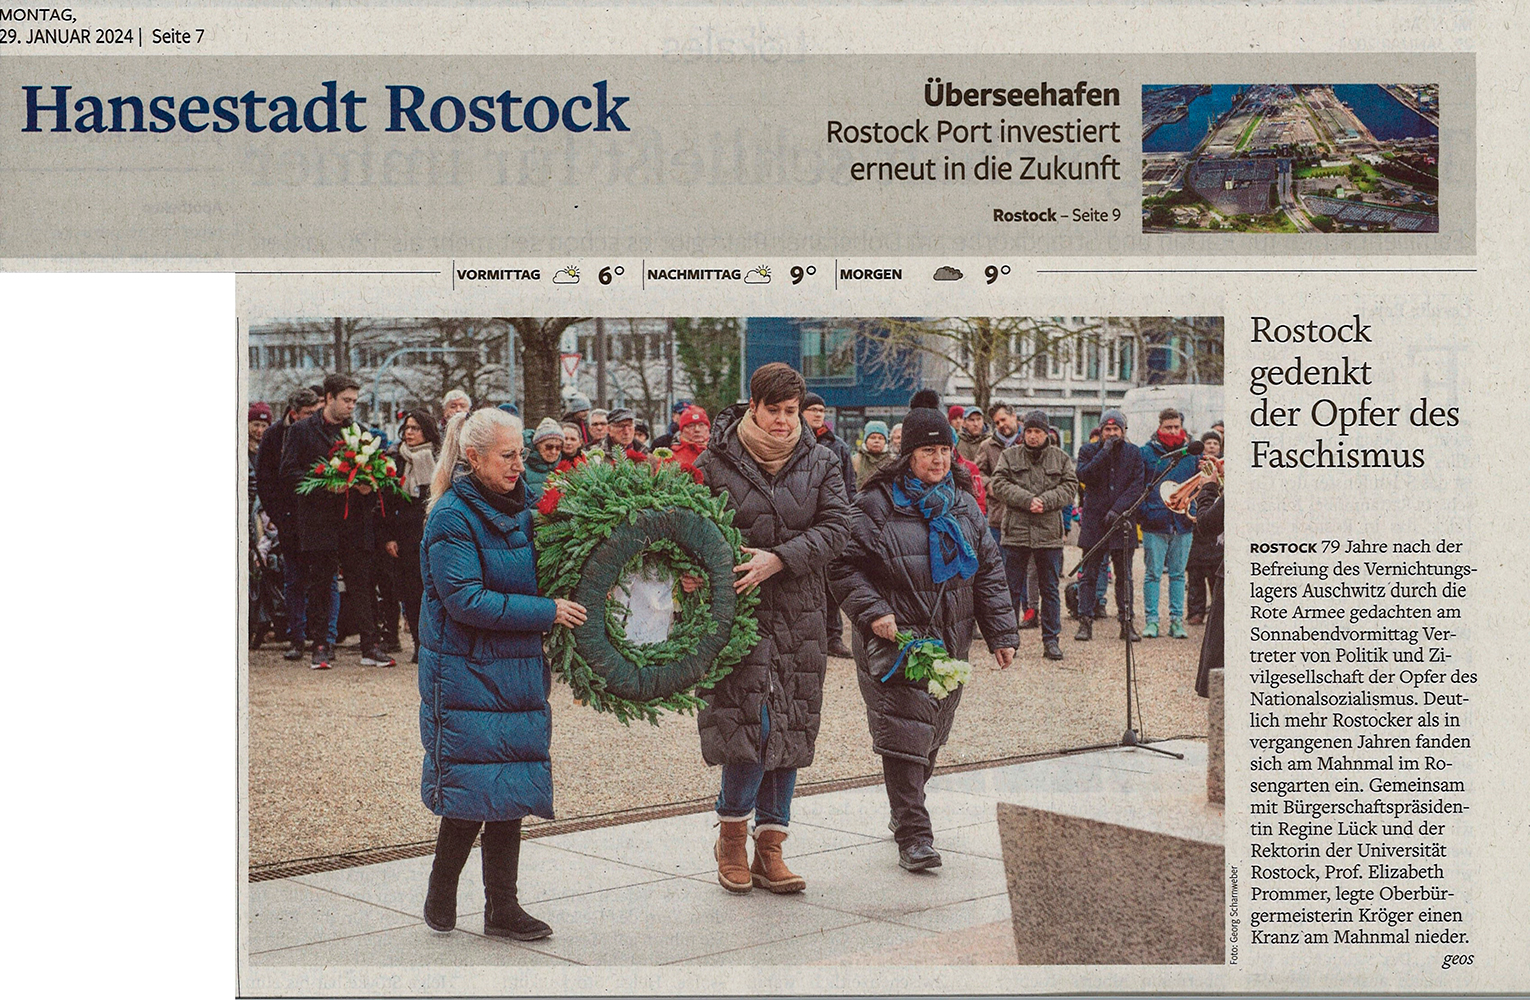 NNN, 29.01.24, S.7, Rostock gedenkt der Opfer des Faschismus, Georg Scharnweber